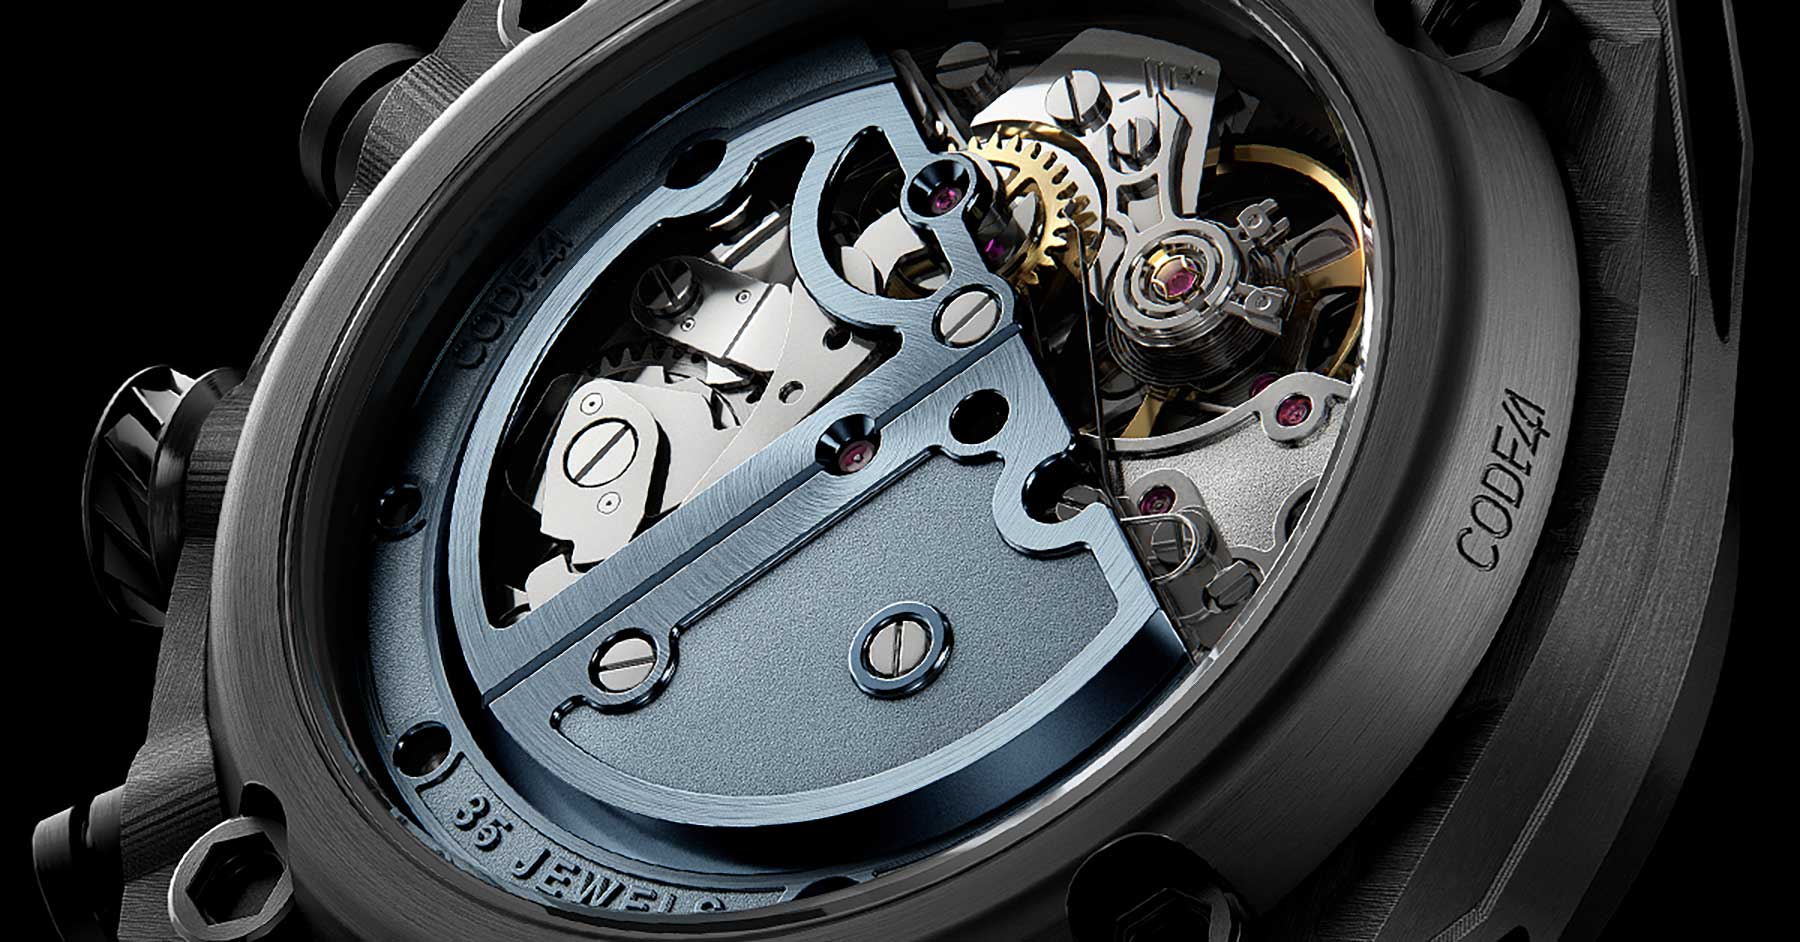 Luxus-Uhr: Der neue Chronograph NB24 Edition 2 von CODE41 NB24-Edition-2-Chronograph-armbanduhr-design-03 